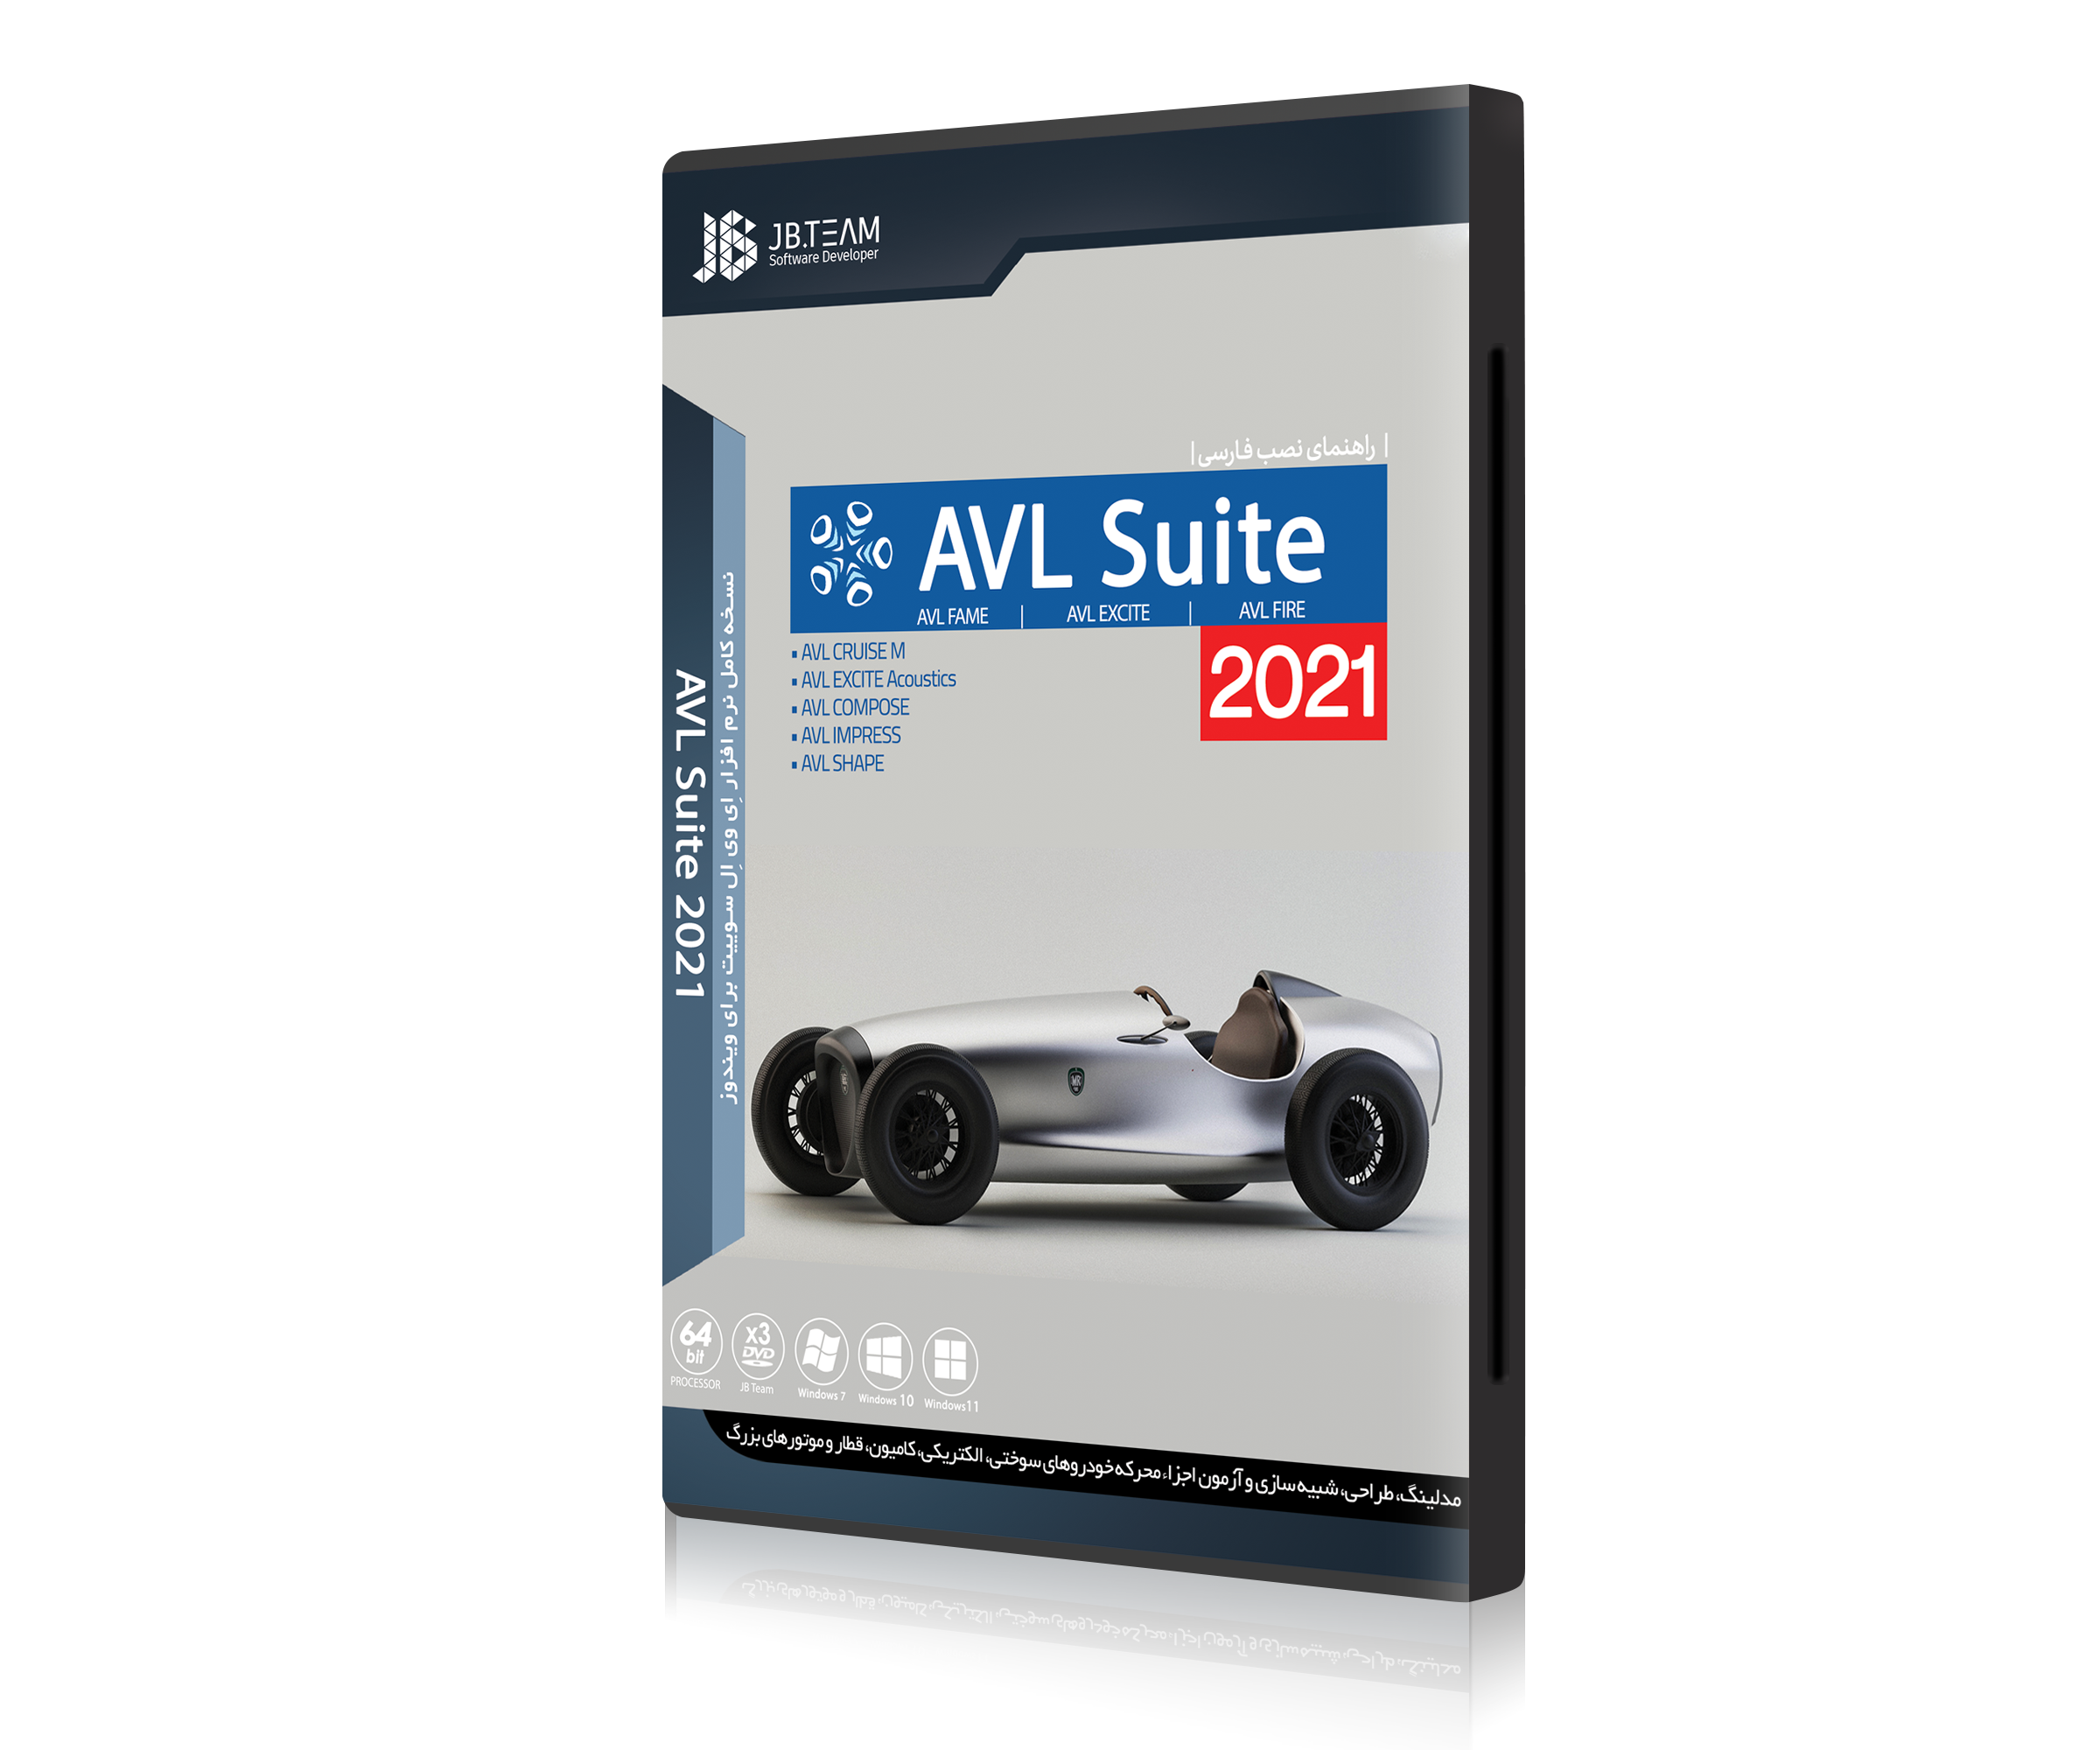 AVL Suite 2021